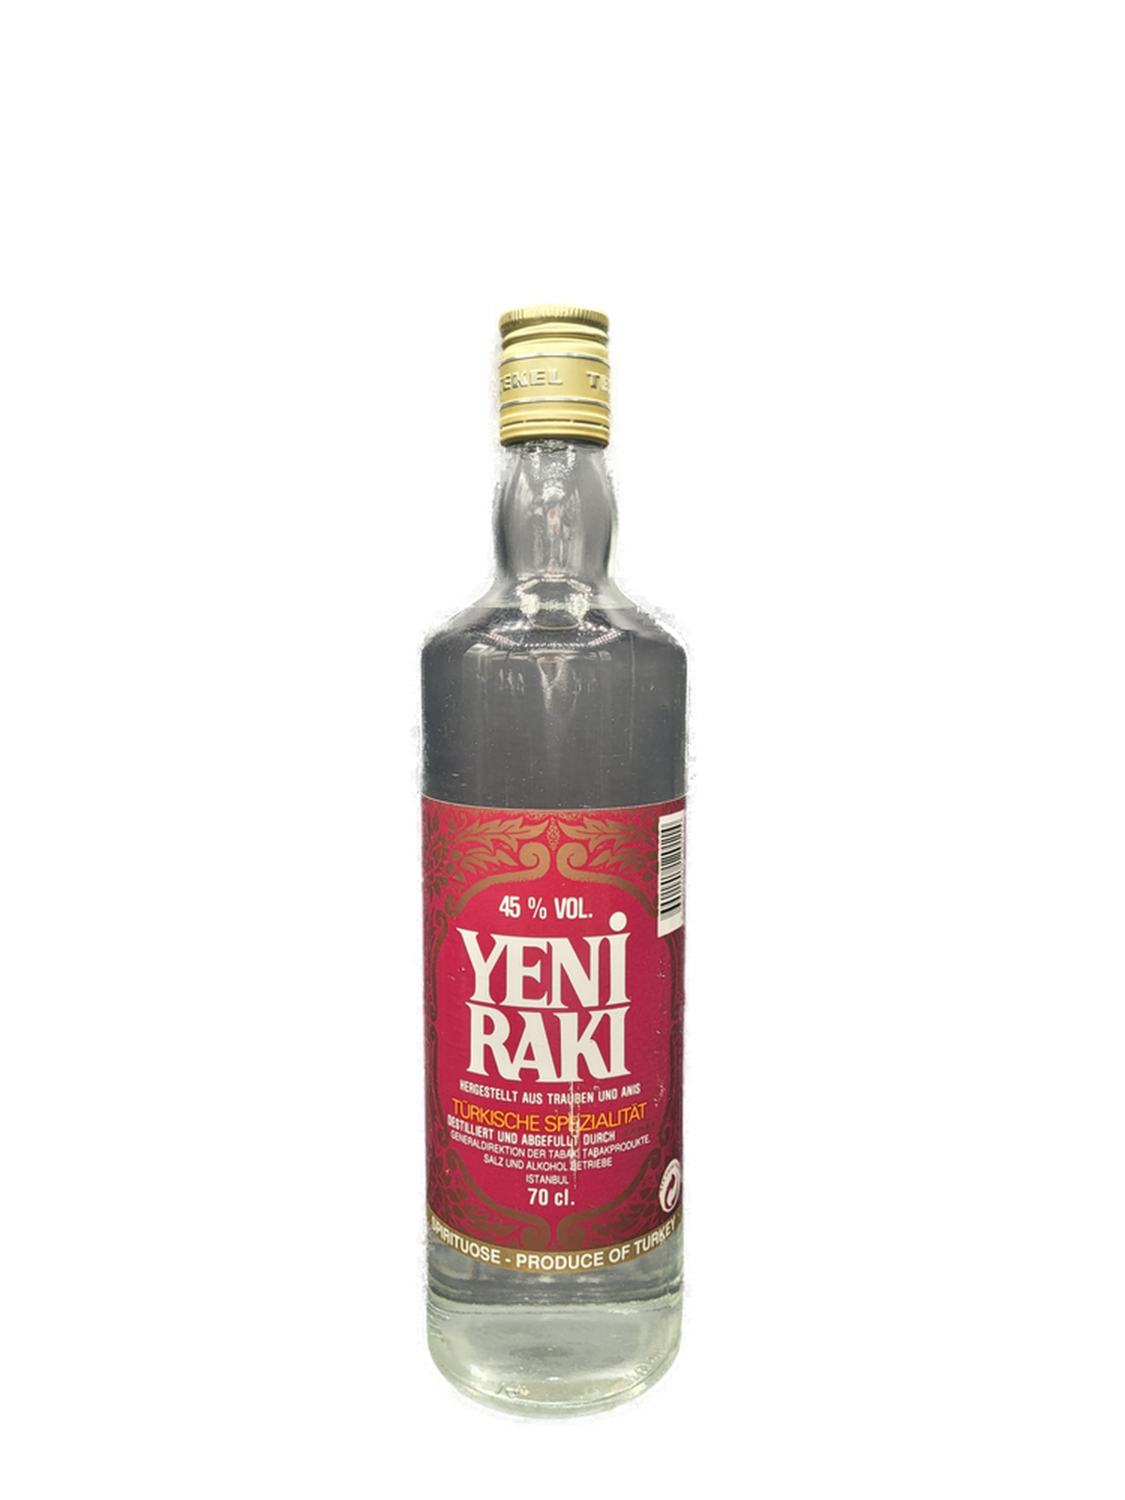 Yeni Raki Türkei 45% Ausführung alte VOL